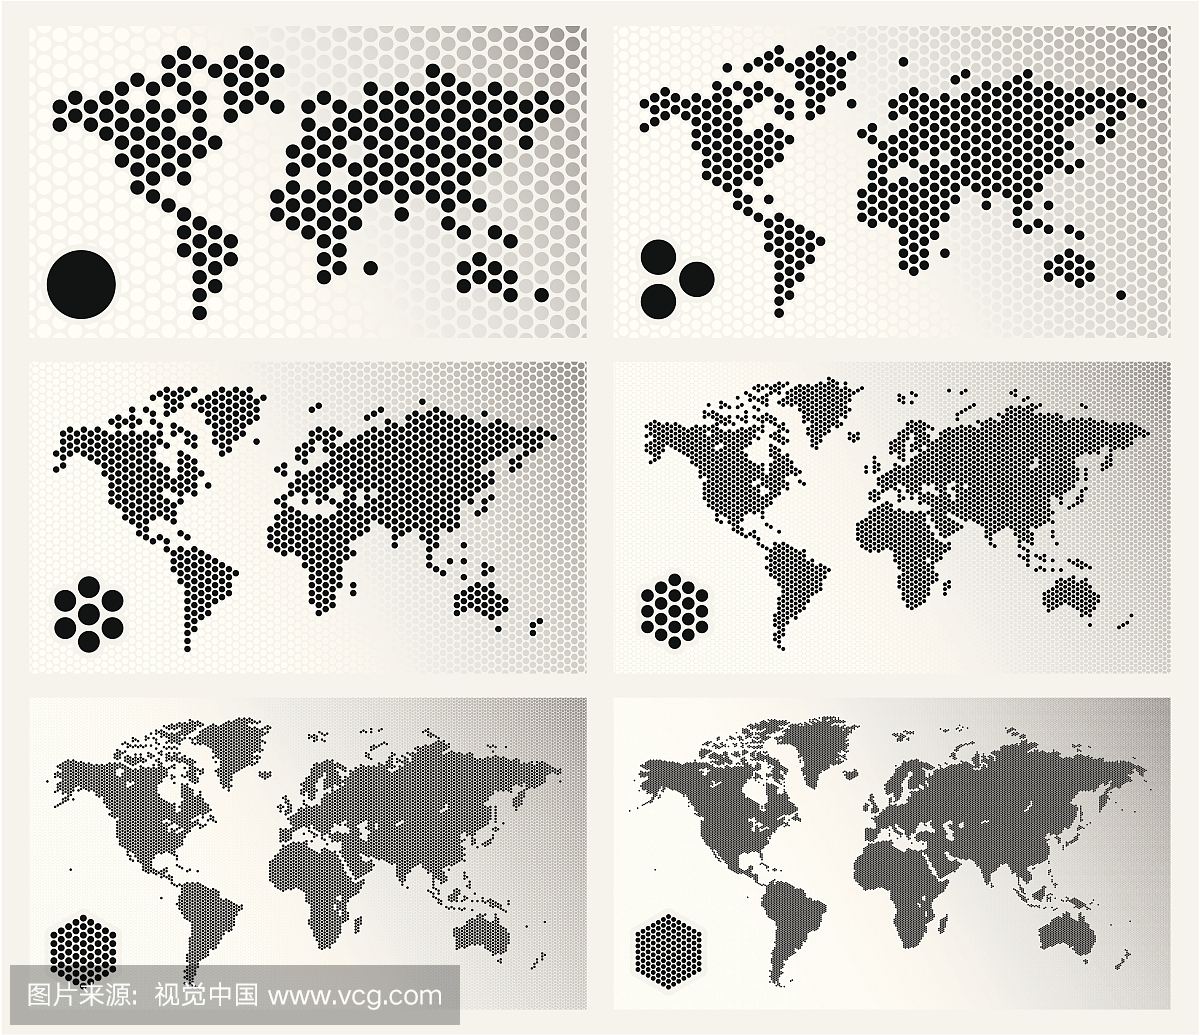 虚拟世界地图在不同的决议